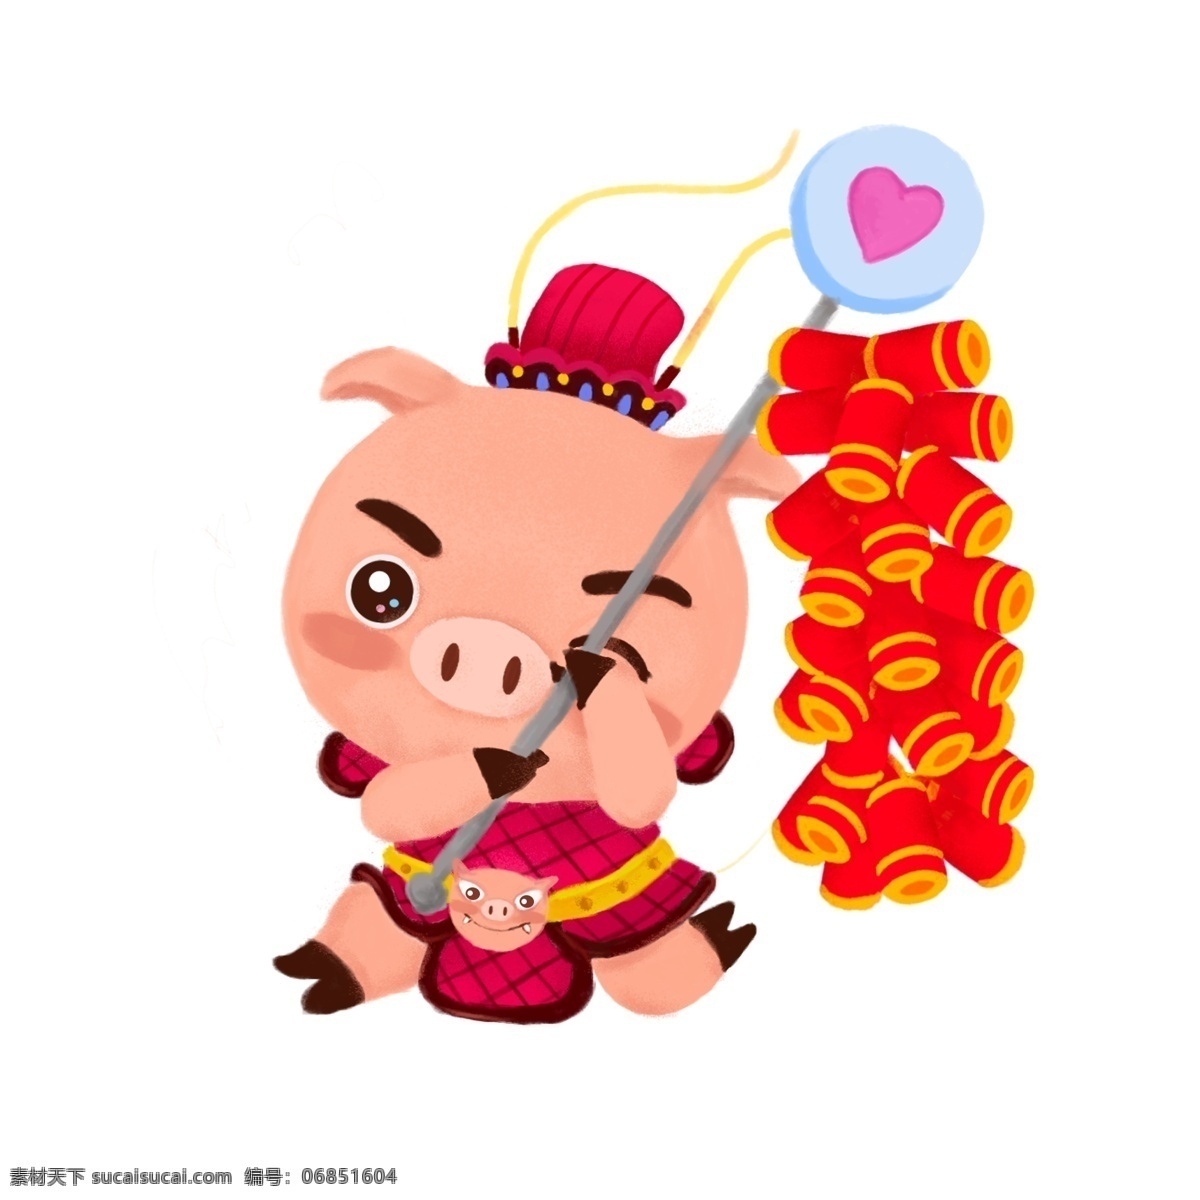 2019 春节 小 猪 原创 商用 元素 手绘 吉祥物 周年 生肖 可爱猪 贺岁 放鞭炮